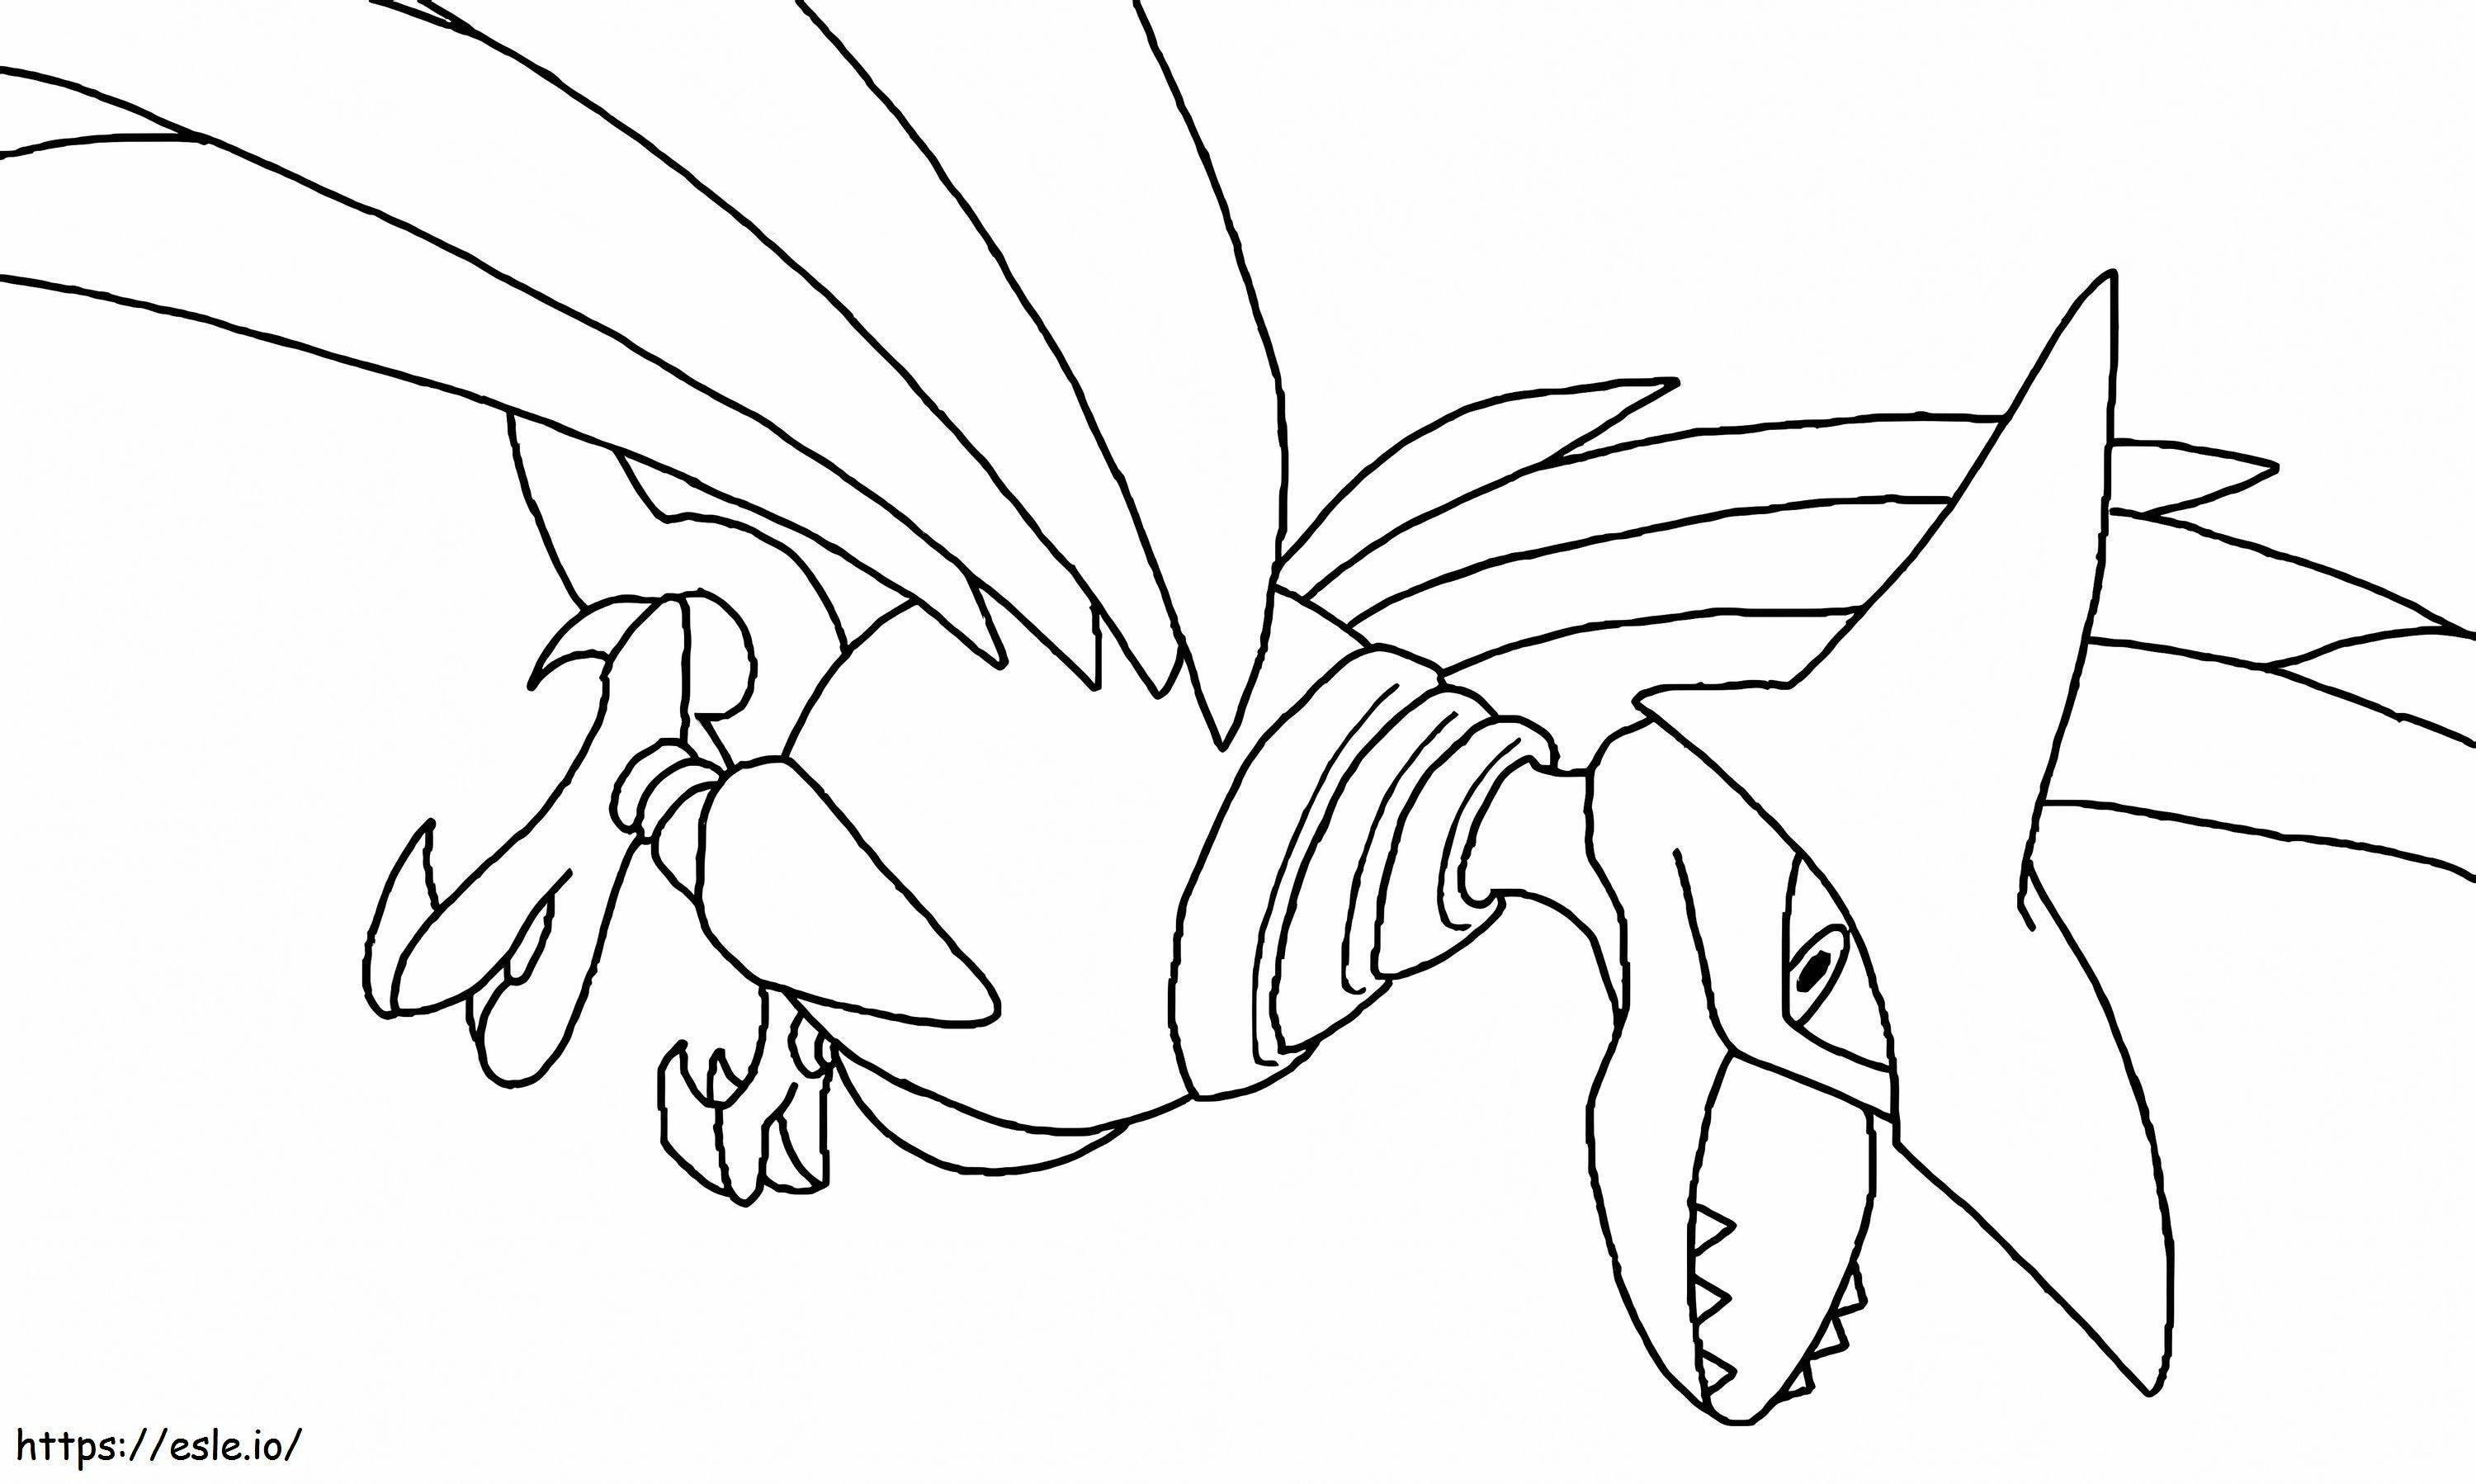 Coloriage Airmure Pokémon 5 à imprimer dessin